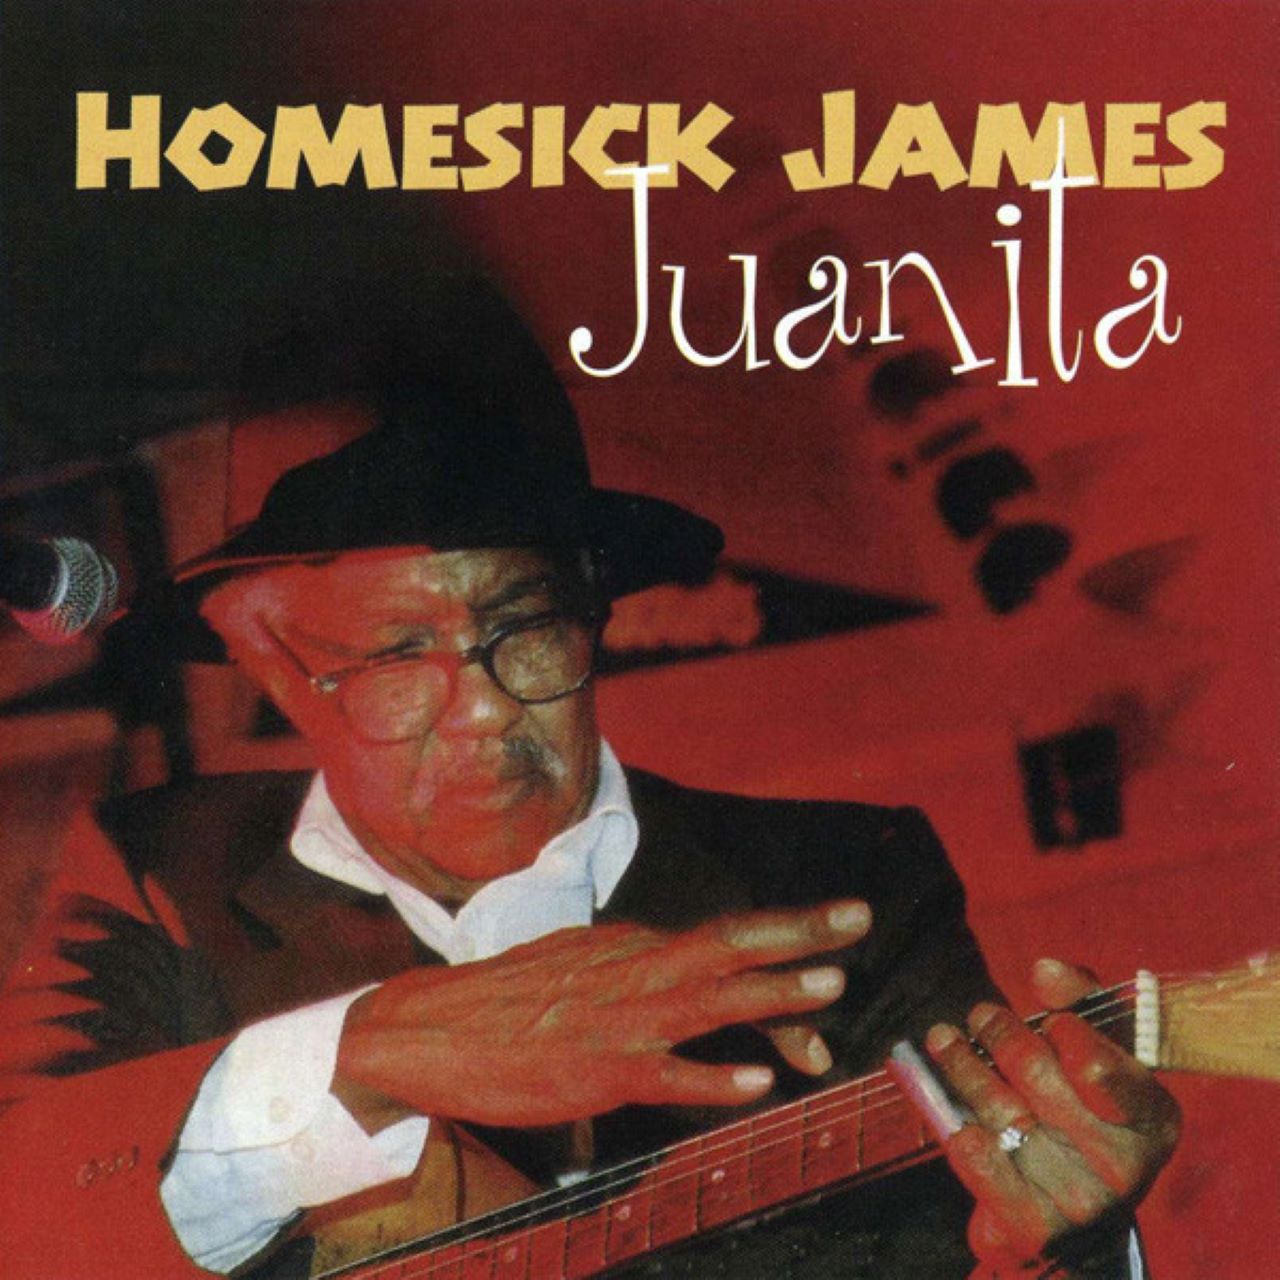 Homesick James – Juanita cover album